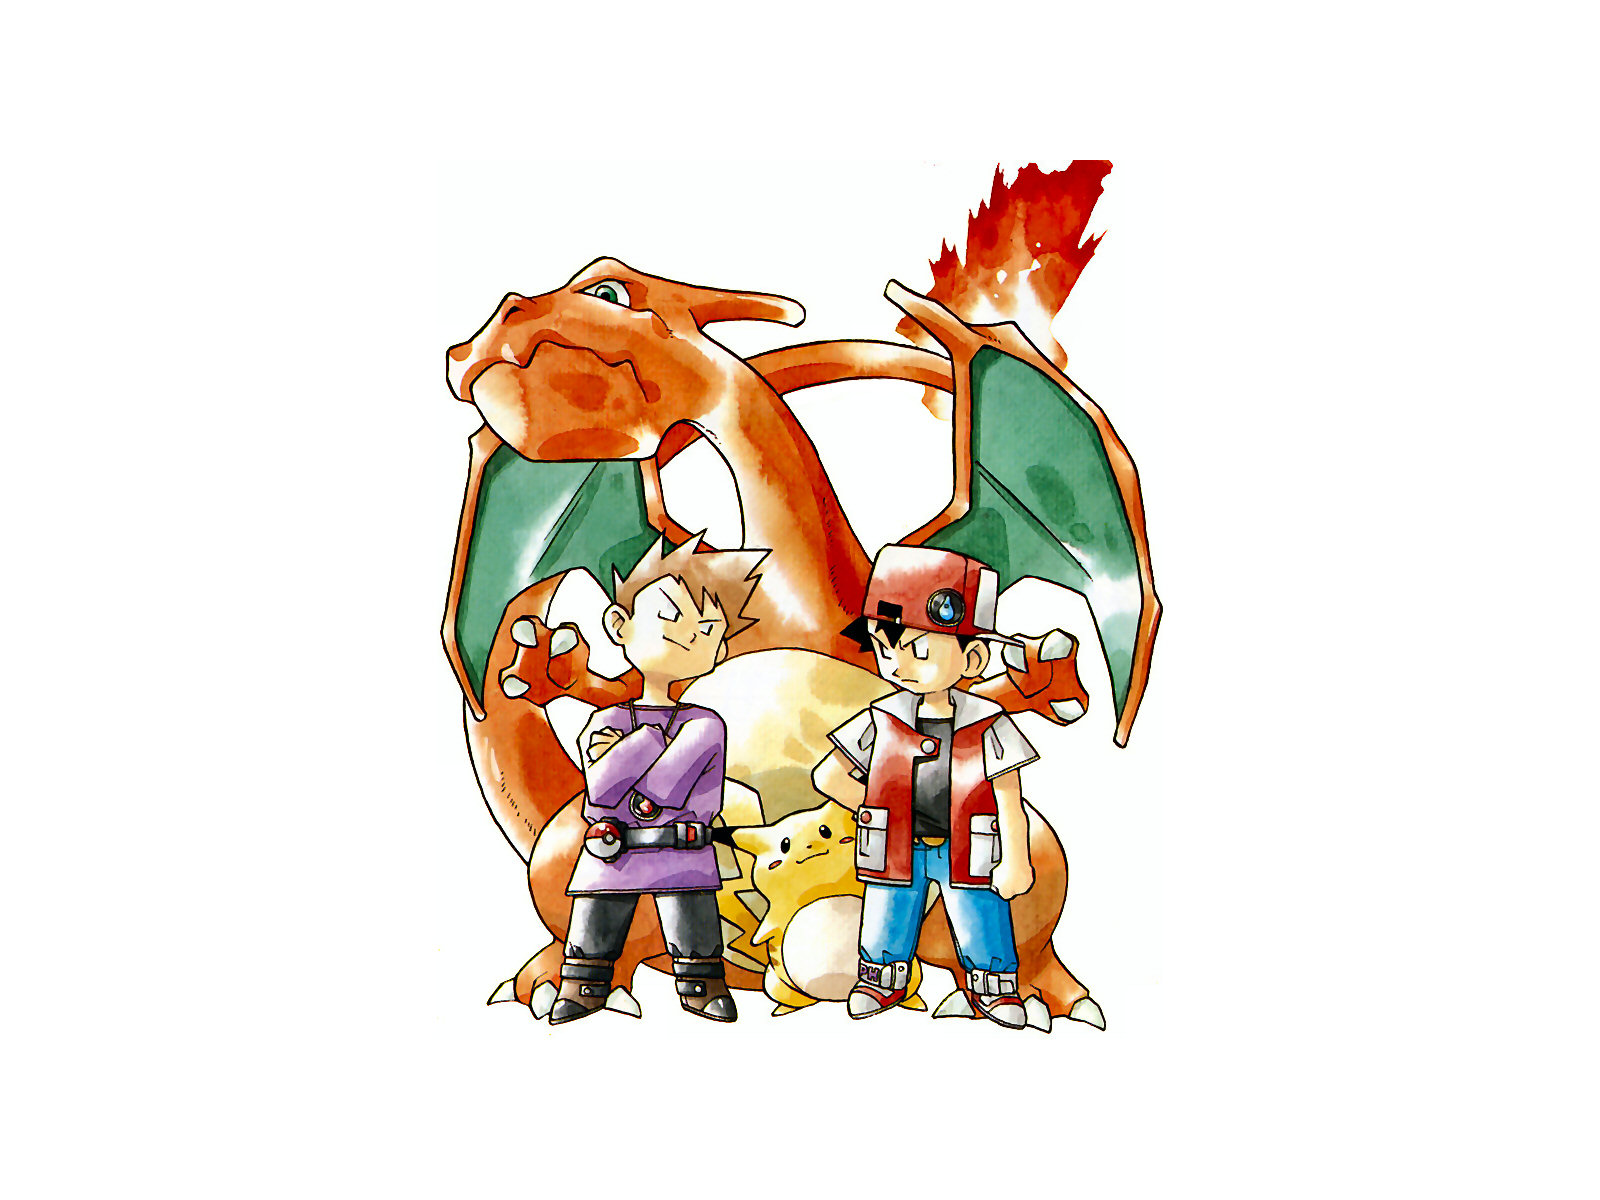 Tải ngay bộ sưu tập Pikachu, Charmander, Bulbasaur và nhiều Pokémon khác với những hình nền độc đáo trong thế giới đầy màu sắc của Pokémon Wallpapers.